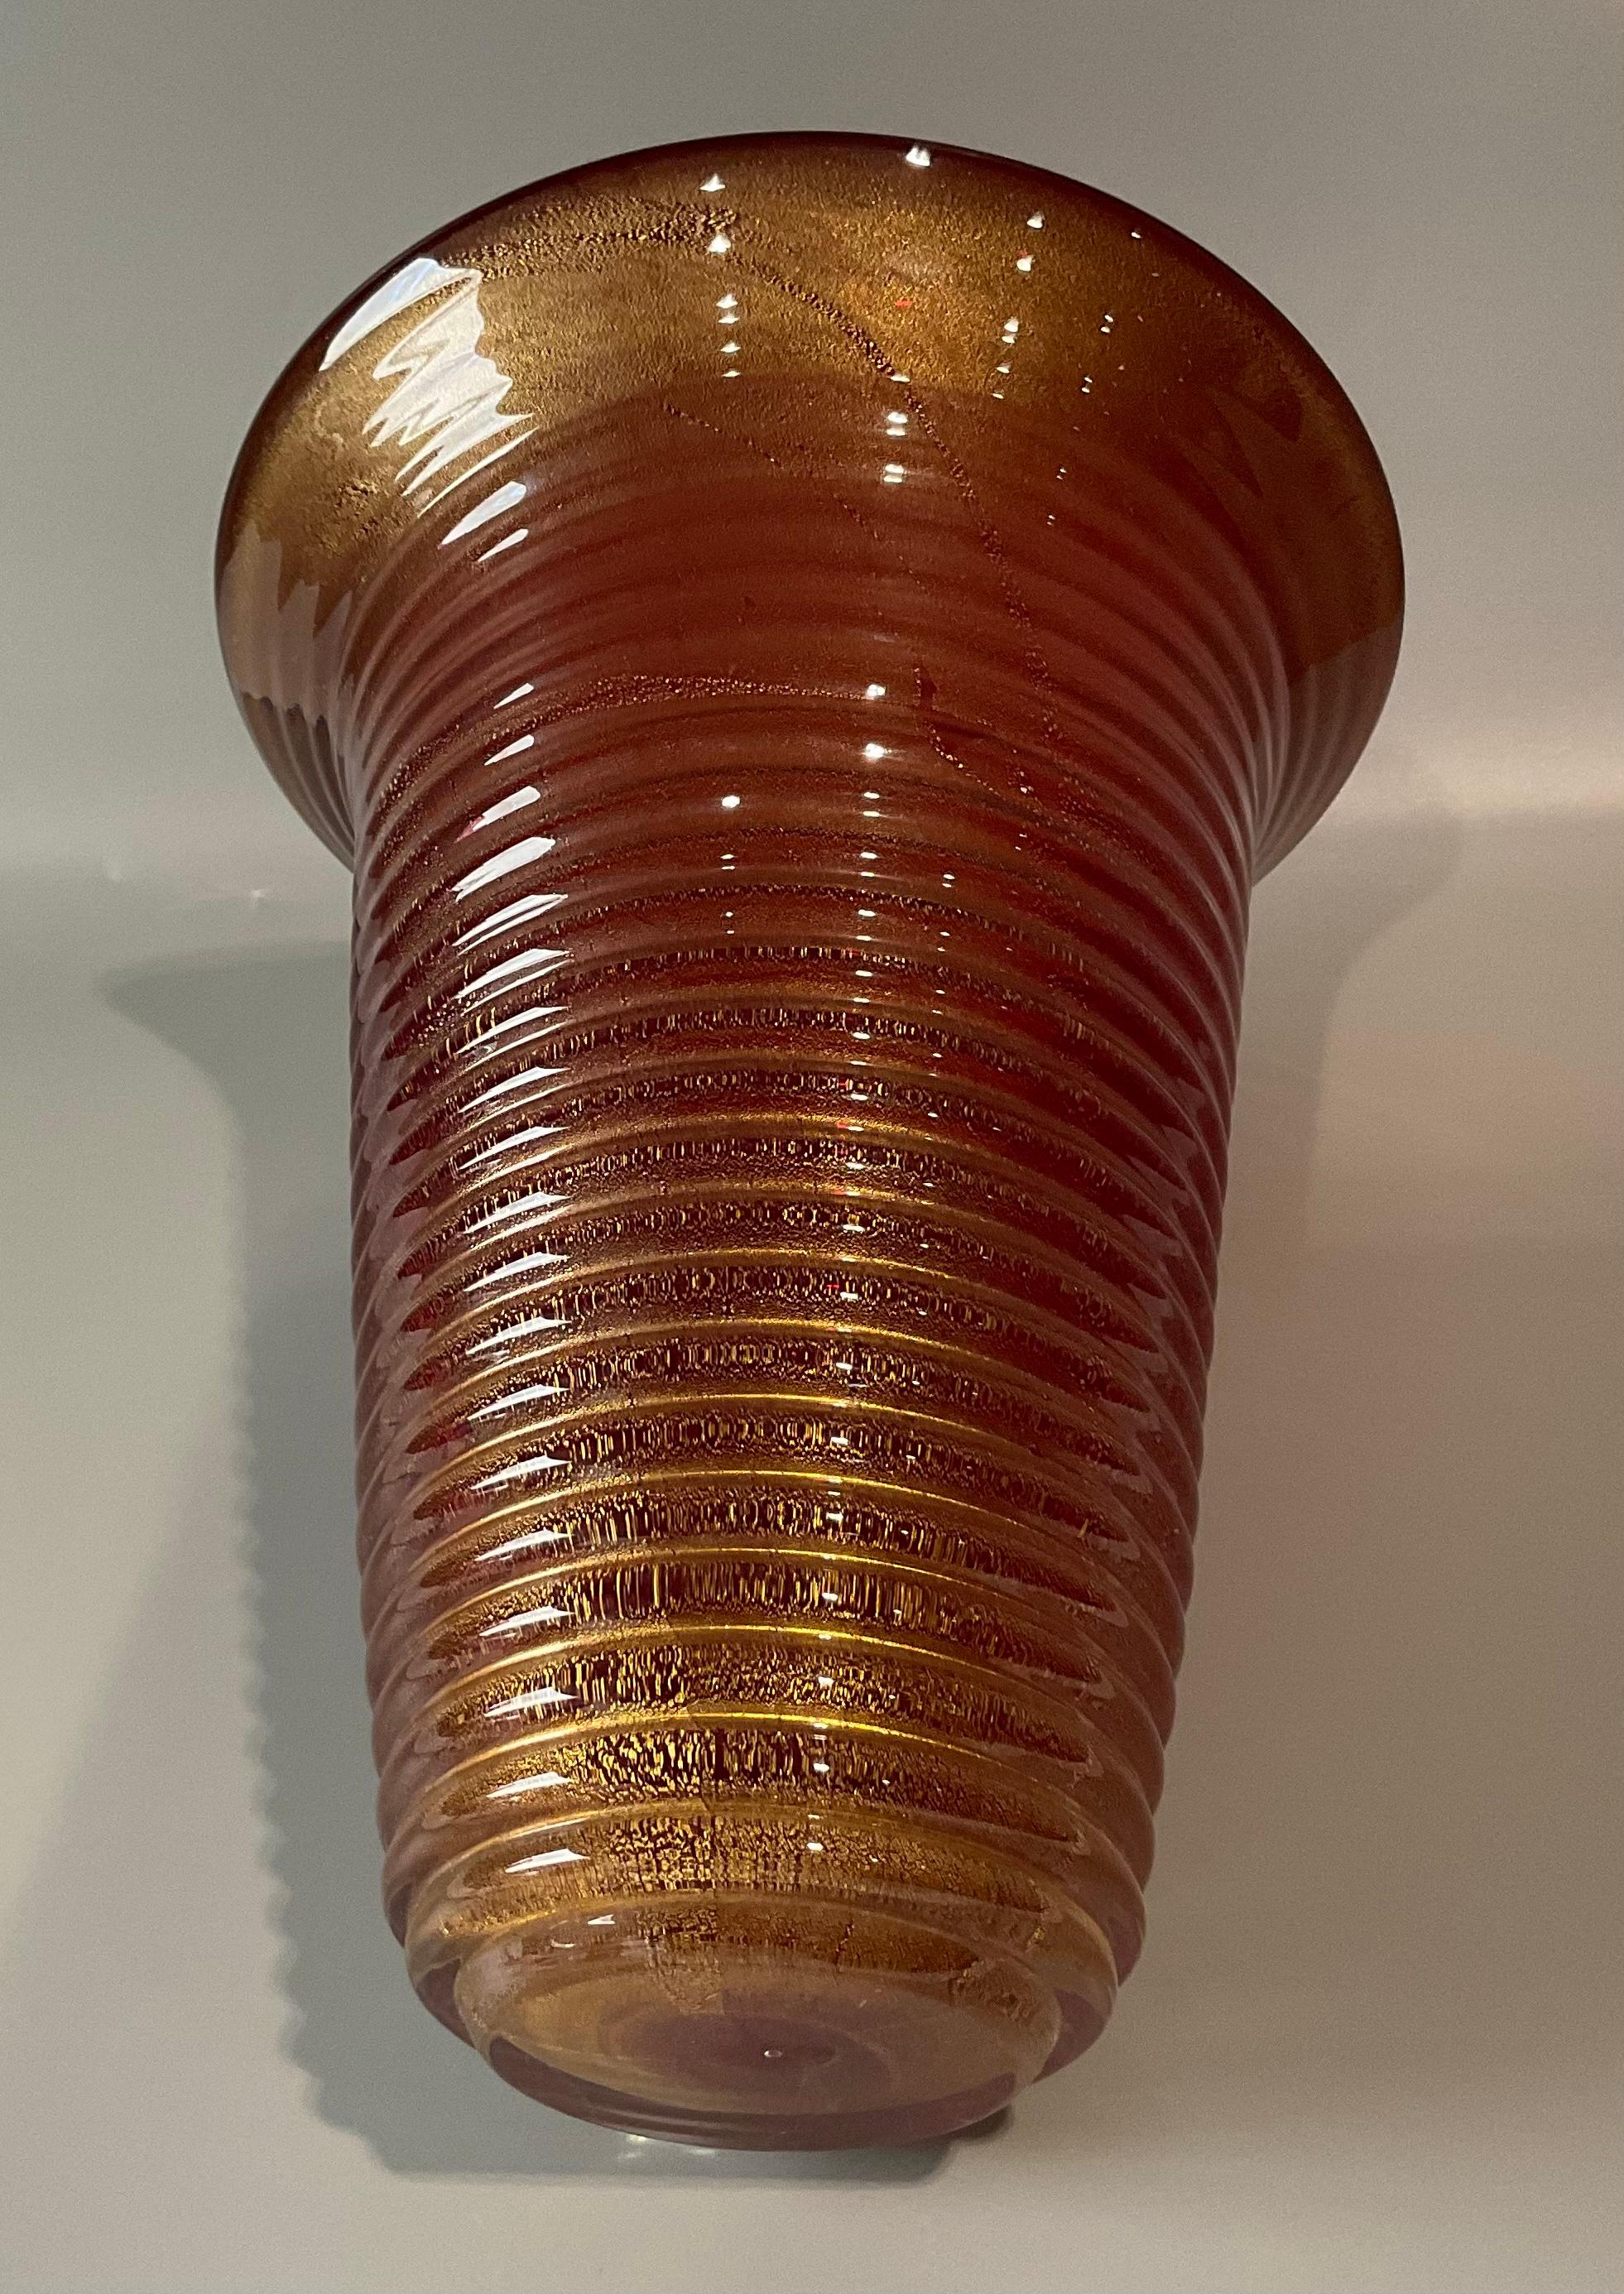 Signiert mit einem originalen Label Seguso Vetri D'Arte Murano Glas Red Sommerso Vase mit Blattgold in klar umhüllt. Beachten Sie den Waffeleffekt und den glitzernden Goldstaub. Seltene Form für die besten Collections oder Interieurs.